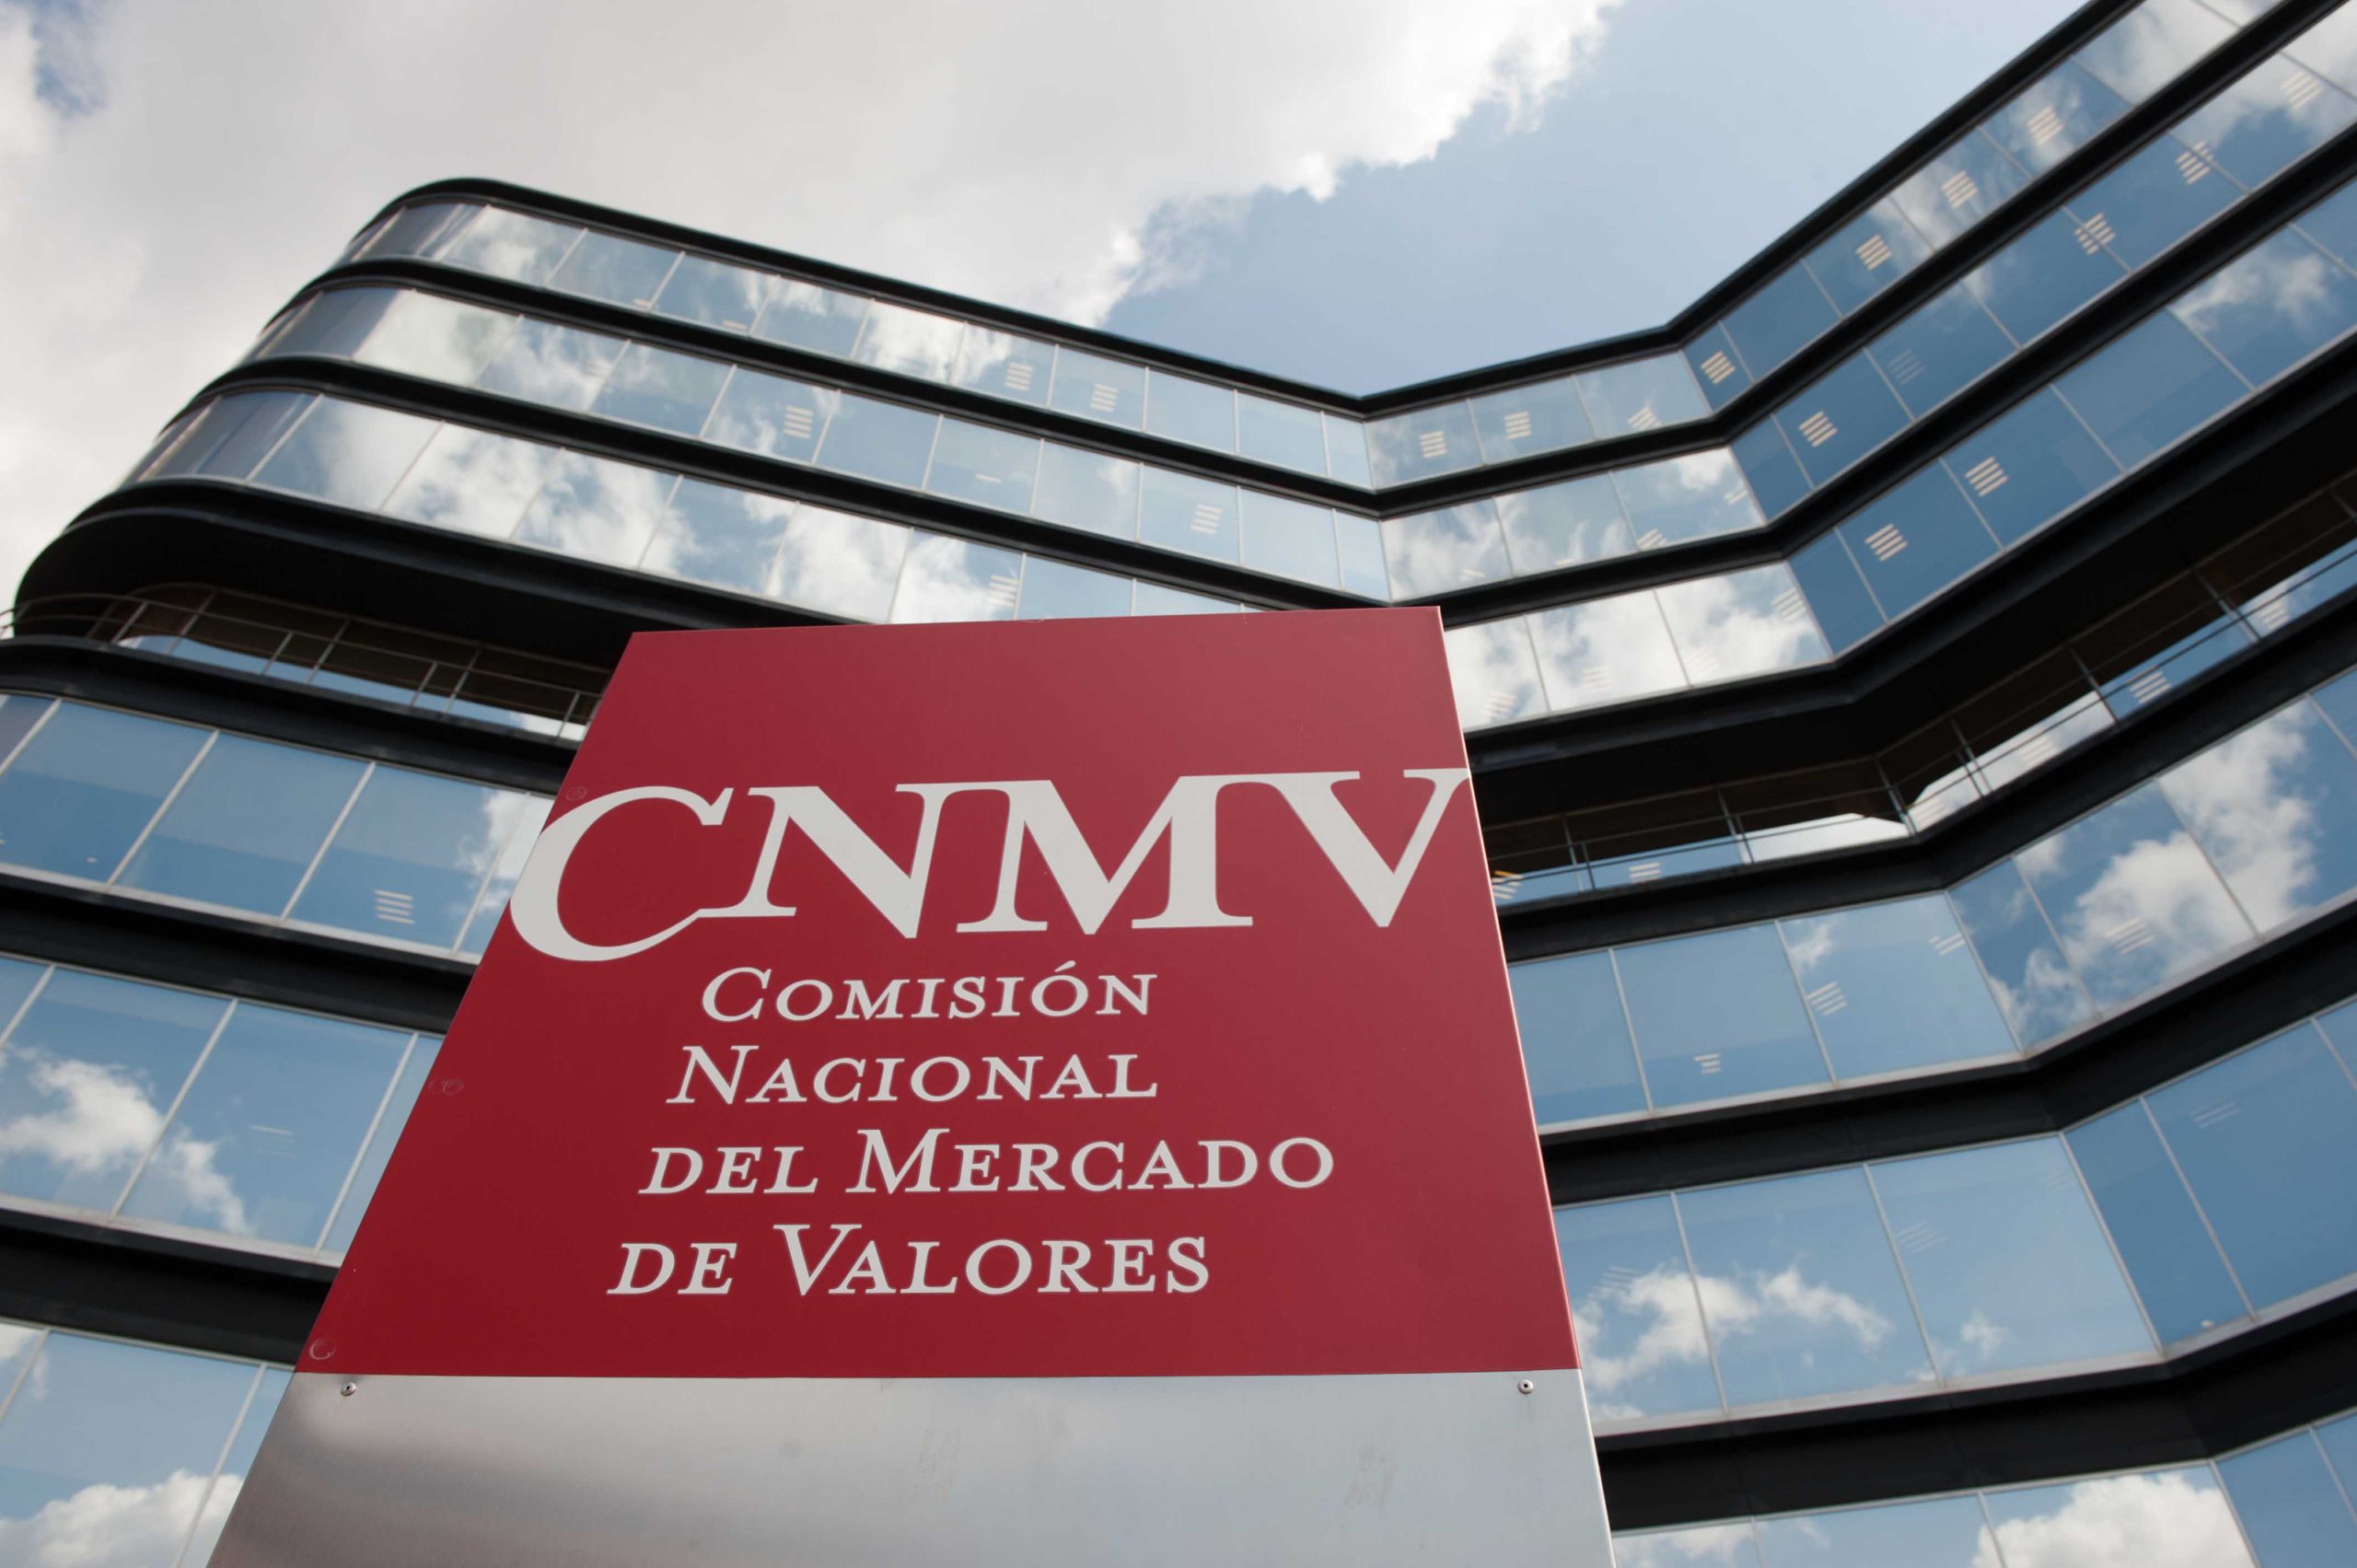 Edificio oficial de la CNMV